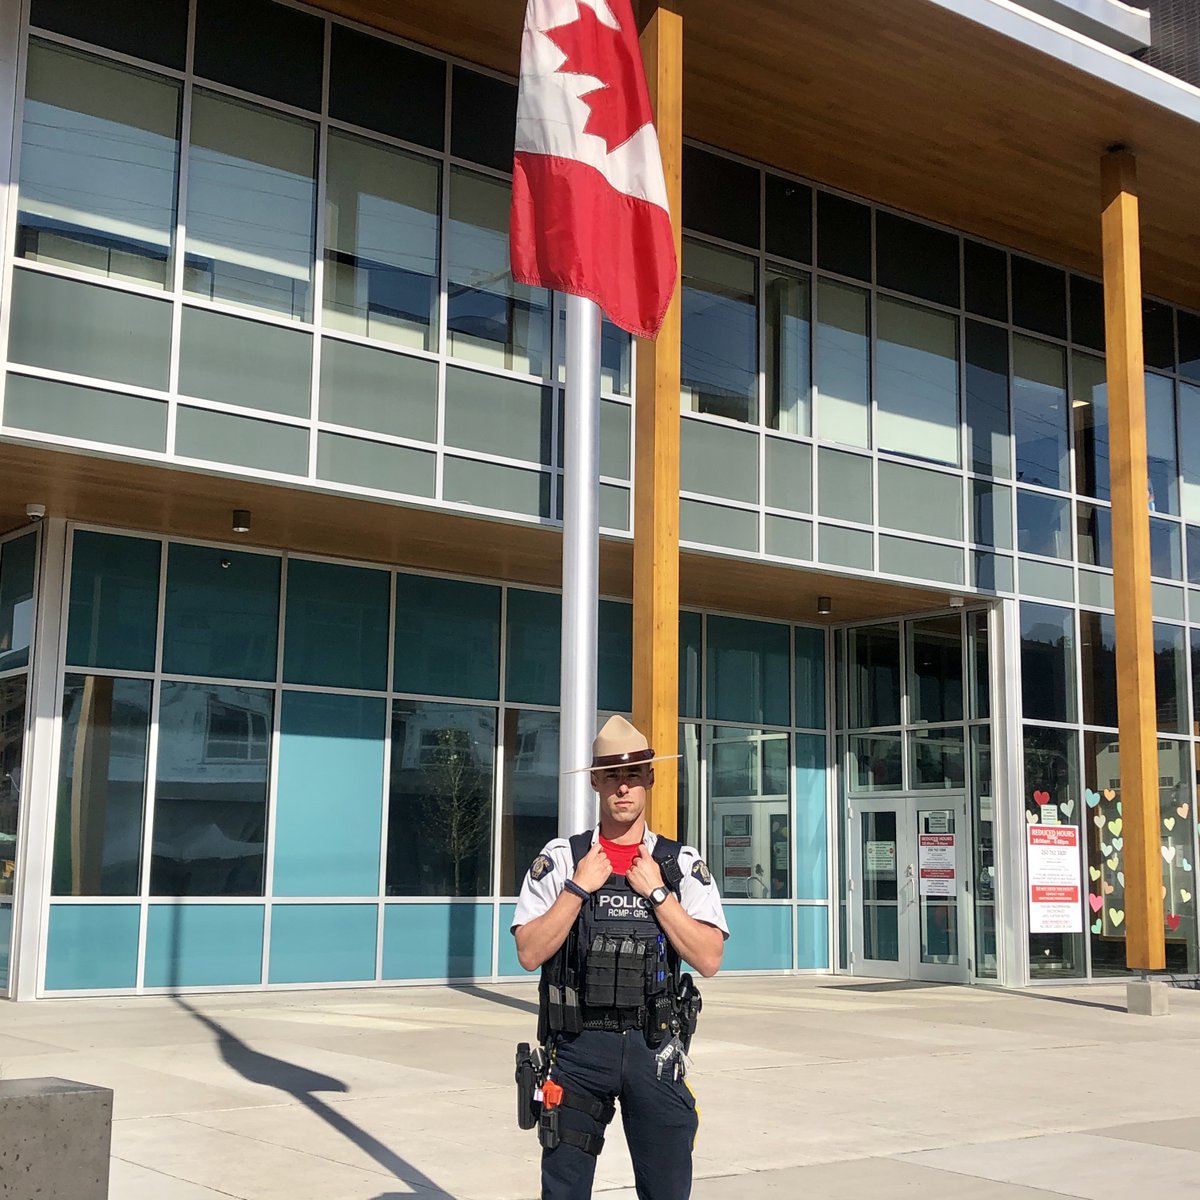 #vendrediportezdurouge @GRCdeKelowna  afin d’honorer la gendarme Heidi Stevenson et les autres victimes innocentes tuées en Nouvelle Écosse. #WearRedFriday #NouvelleÉcosseforte #GRCnoublierajamais